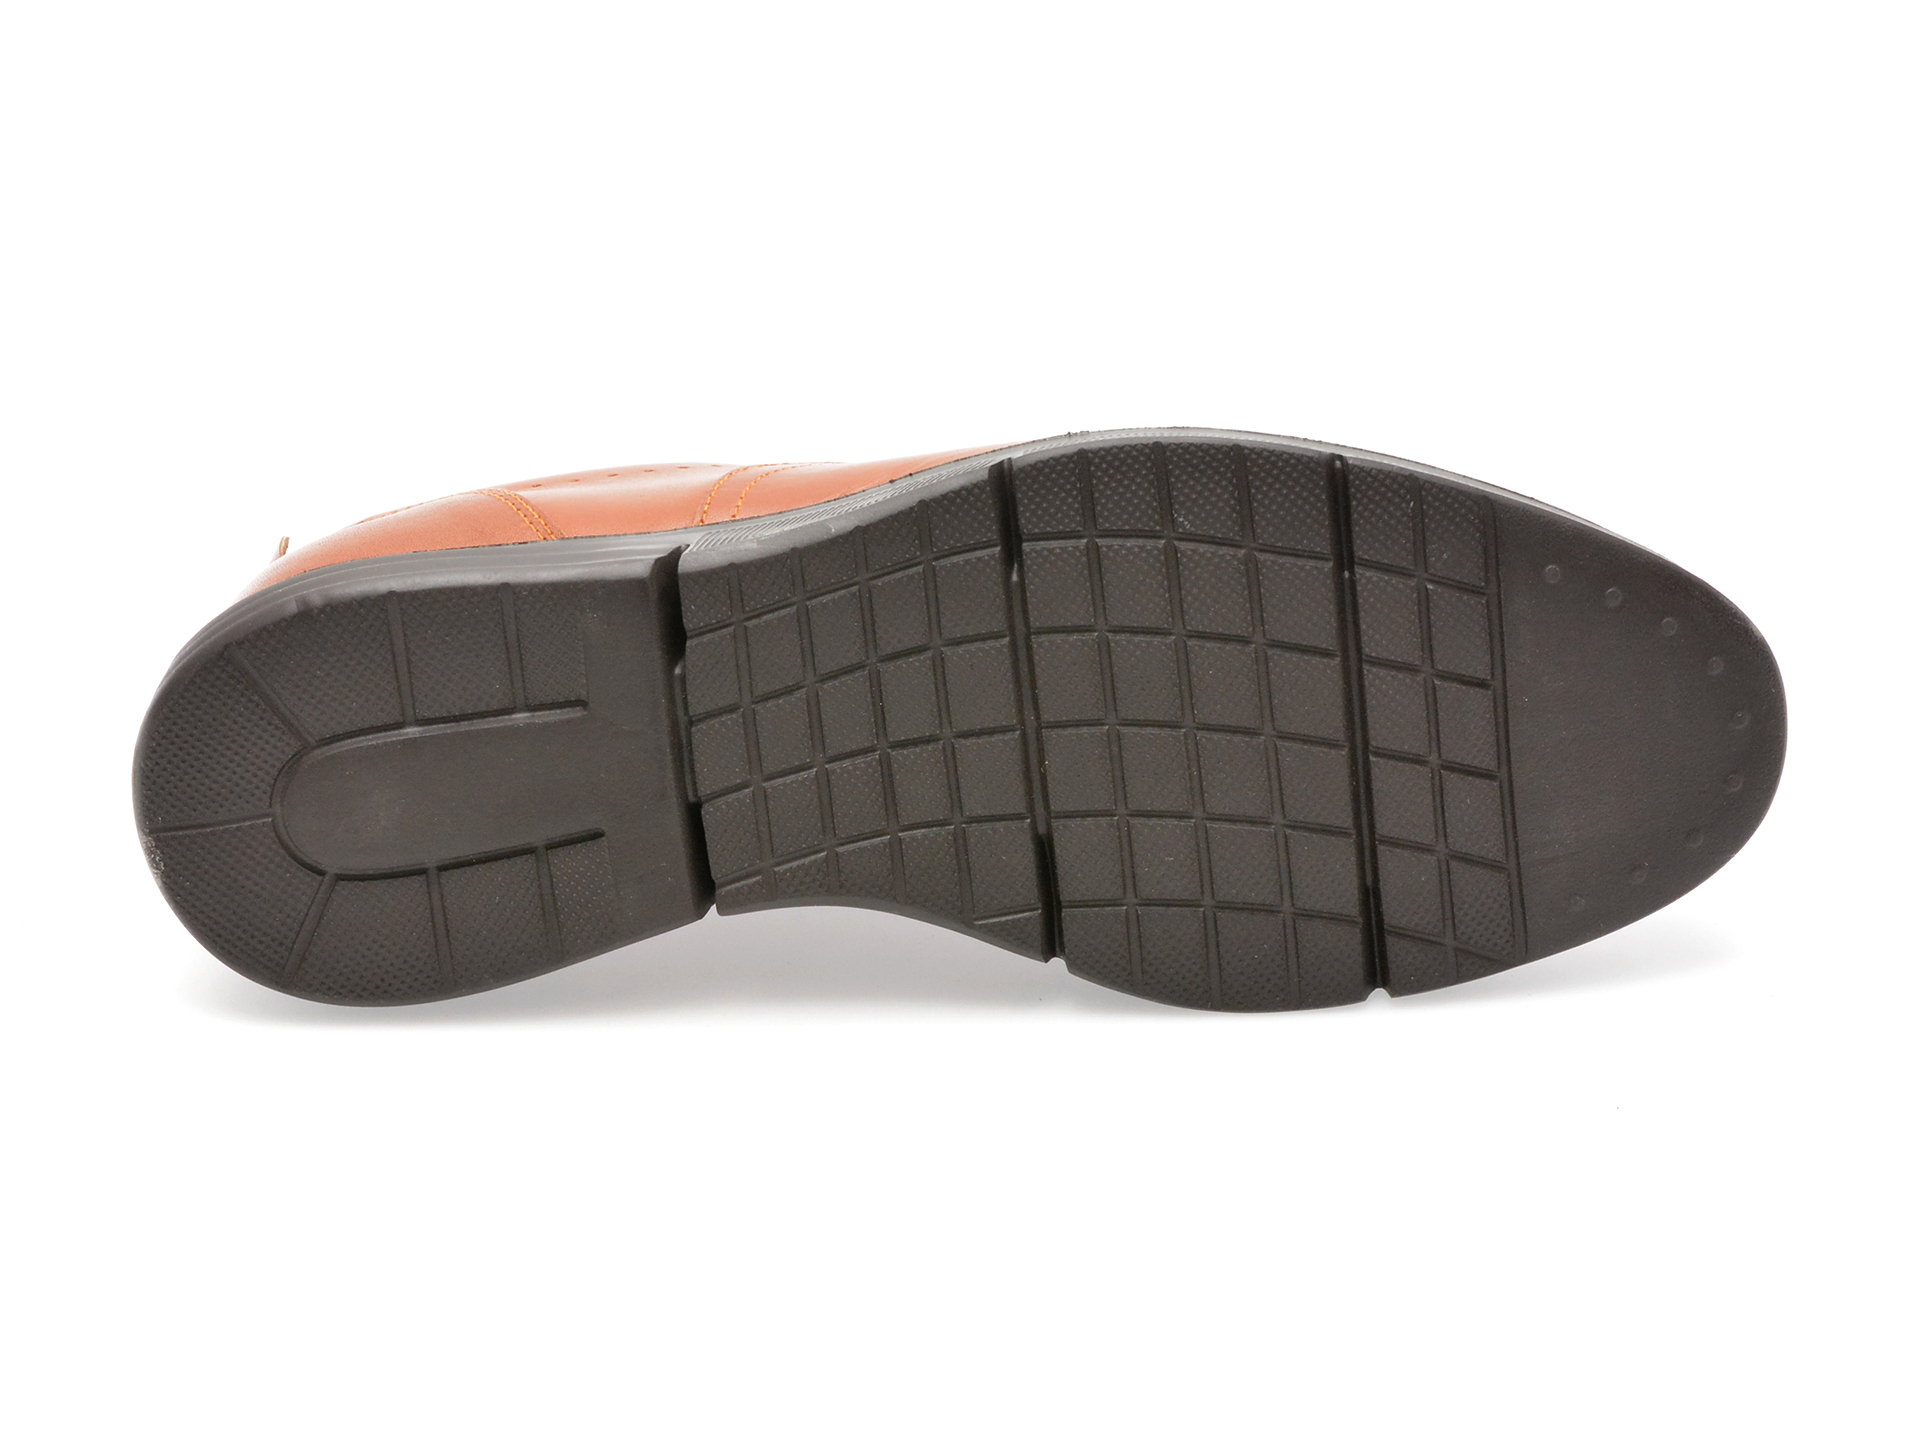 Pantofi OTTER maro, TUR60, din piele naturala